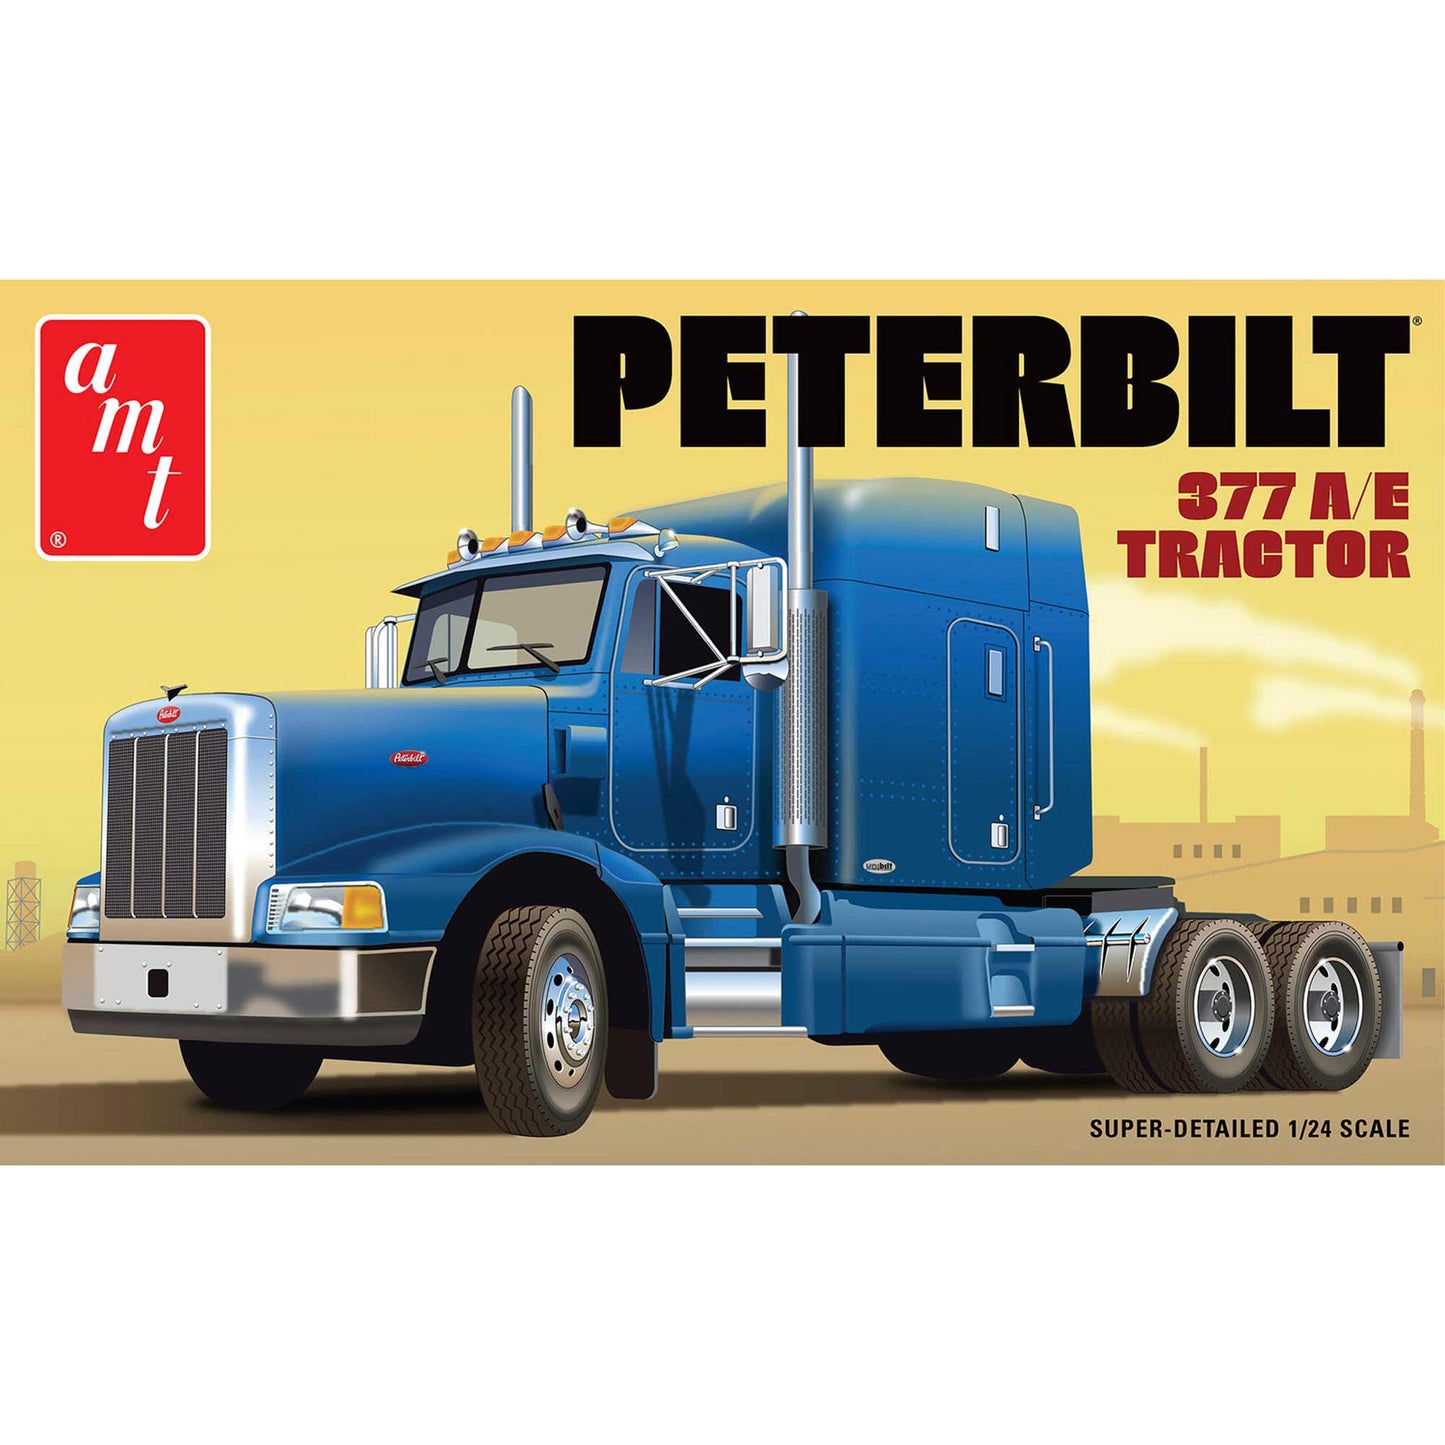 Classic Peterbilt 377 A/E Tractor 1/24